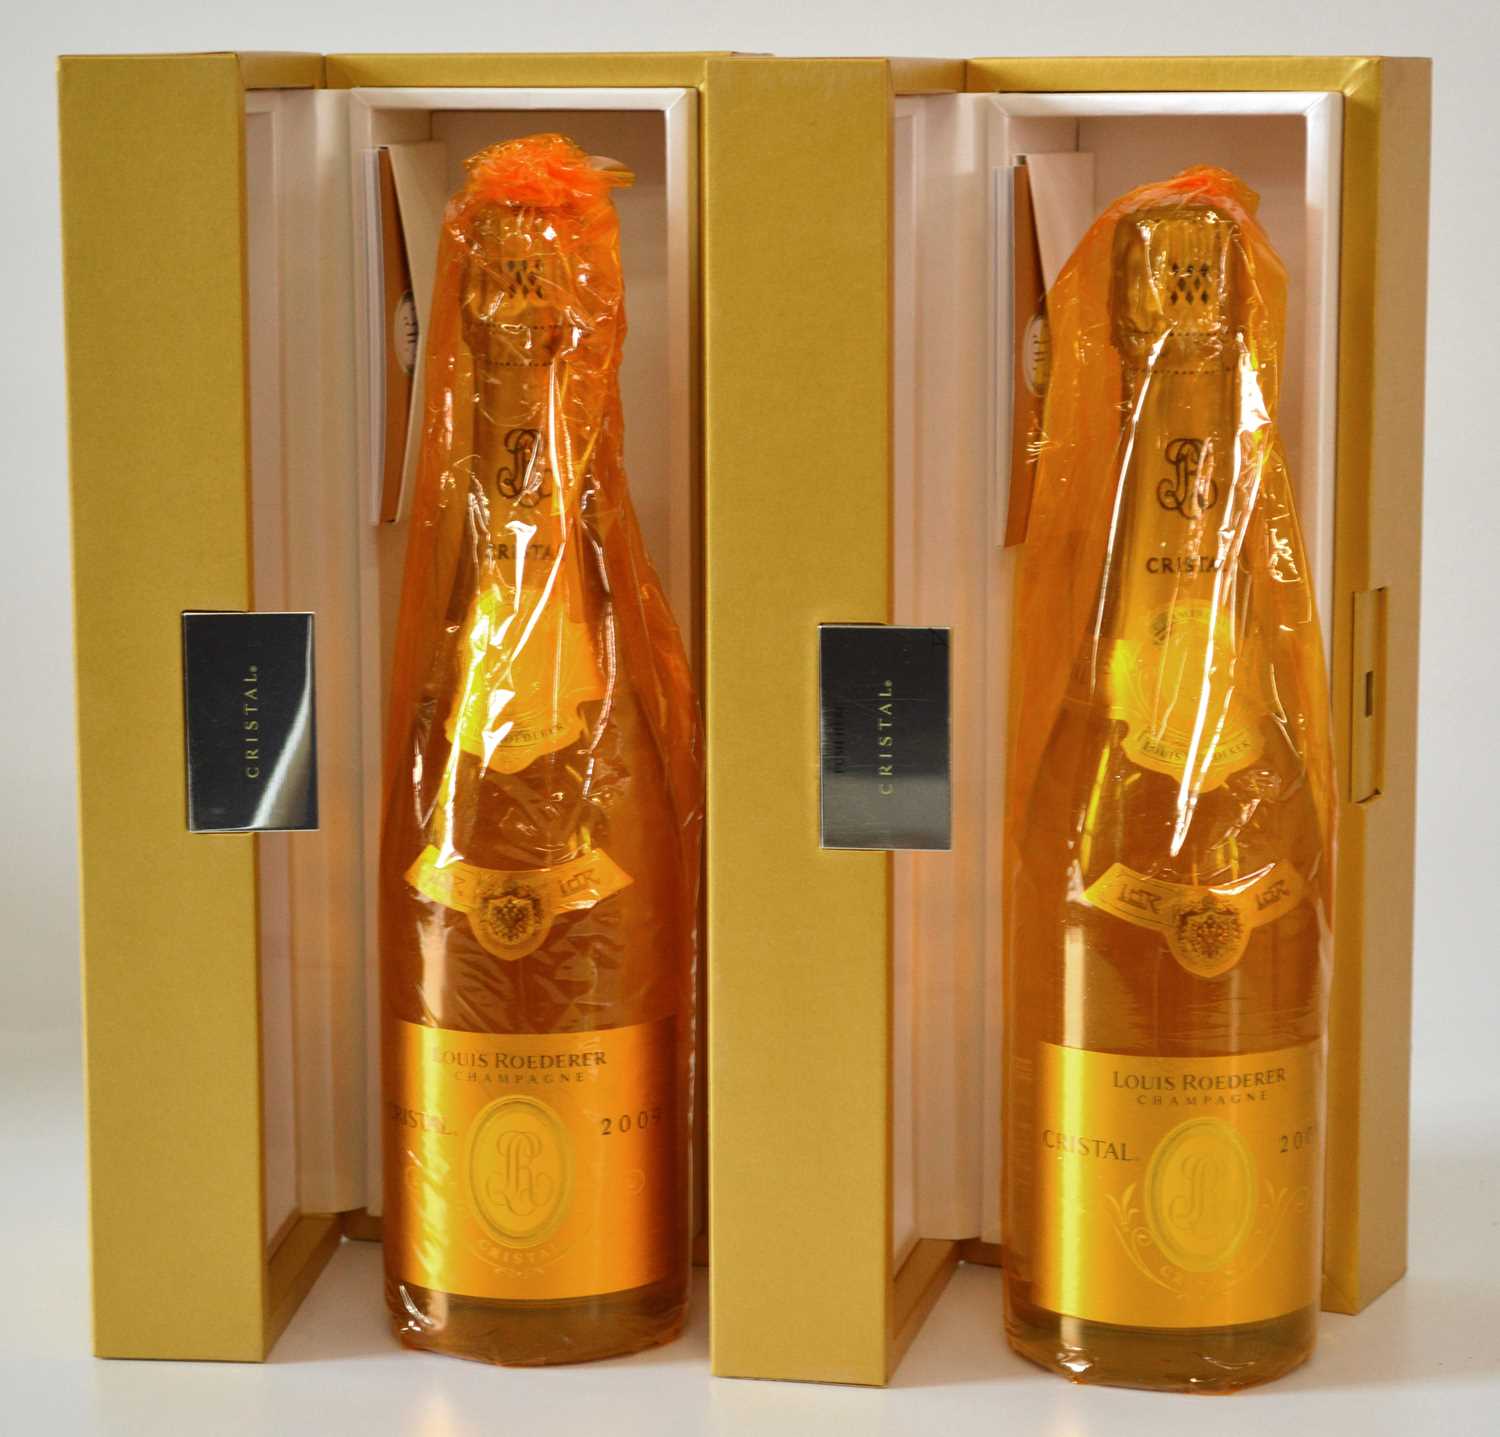 Lot 38 - 2 bottles Champagne Louis Roederer Cristal Vintage 2009